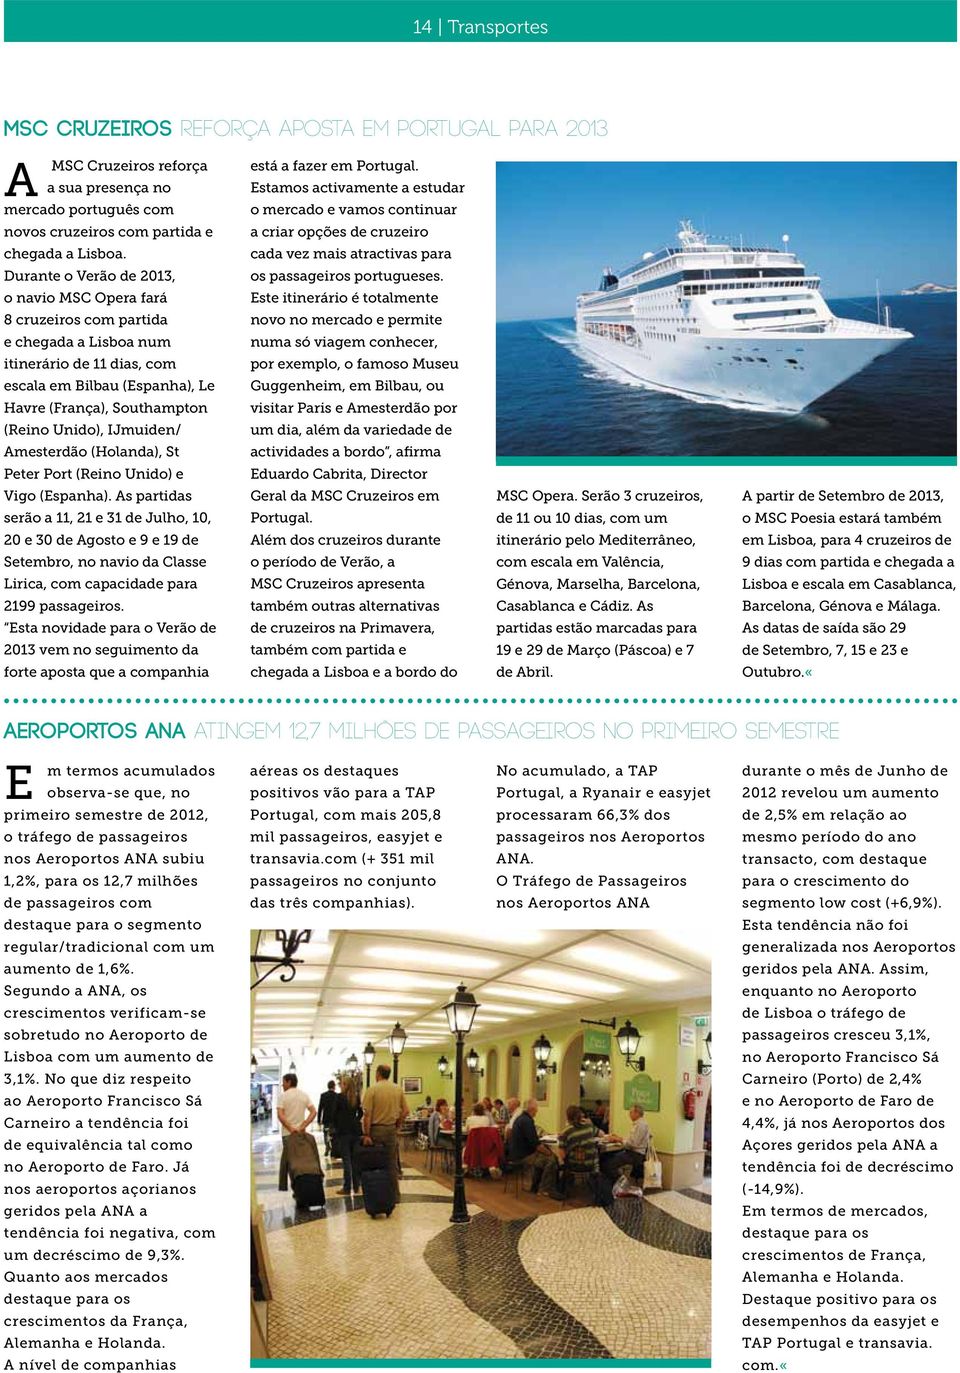 Durante o Verão de 2013, o navio MSC Opera fará 8 cruzeiros com partida e chegada a Lisboa num itinerário de 11 dias, com escala em Bilbau (Espanha), Le Havre (França), Southampton (Reino Unido),